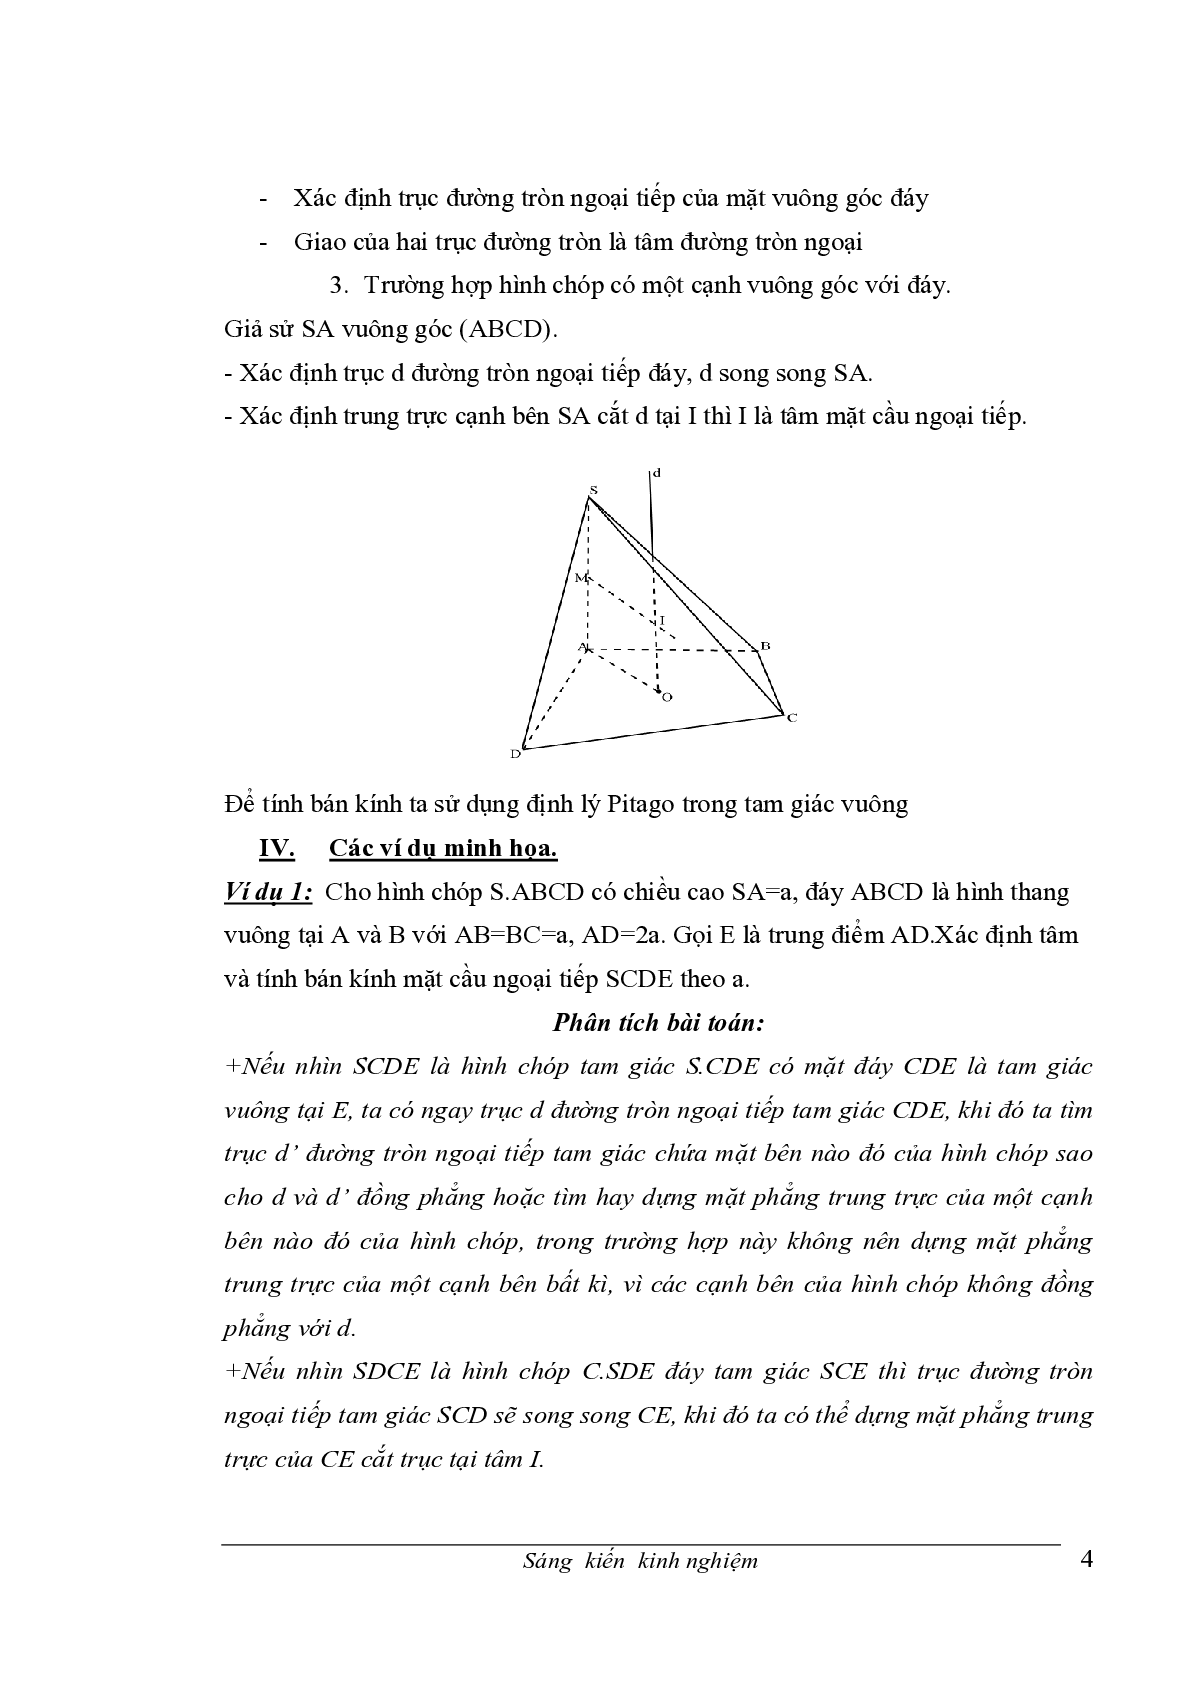 Chuyên đề Mặt cầu ngoại tiếp hình chóp (trang 4)